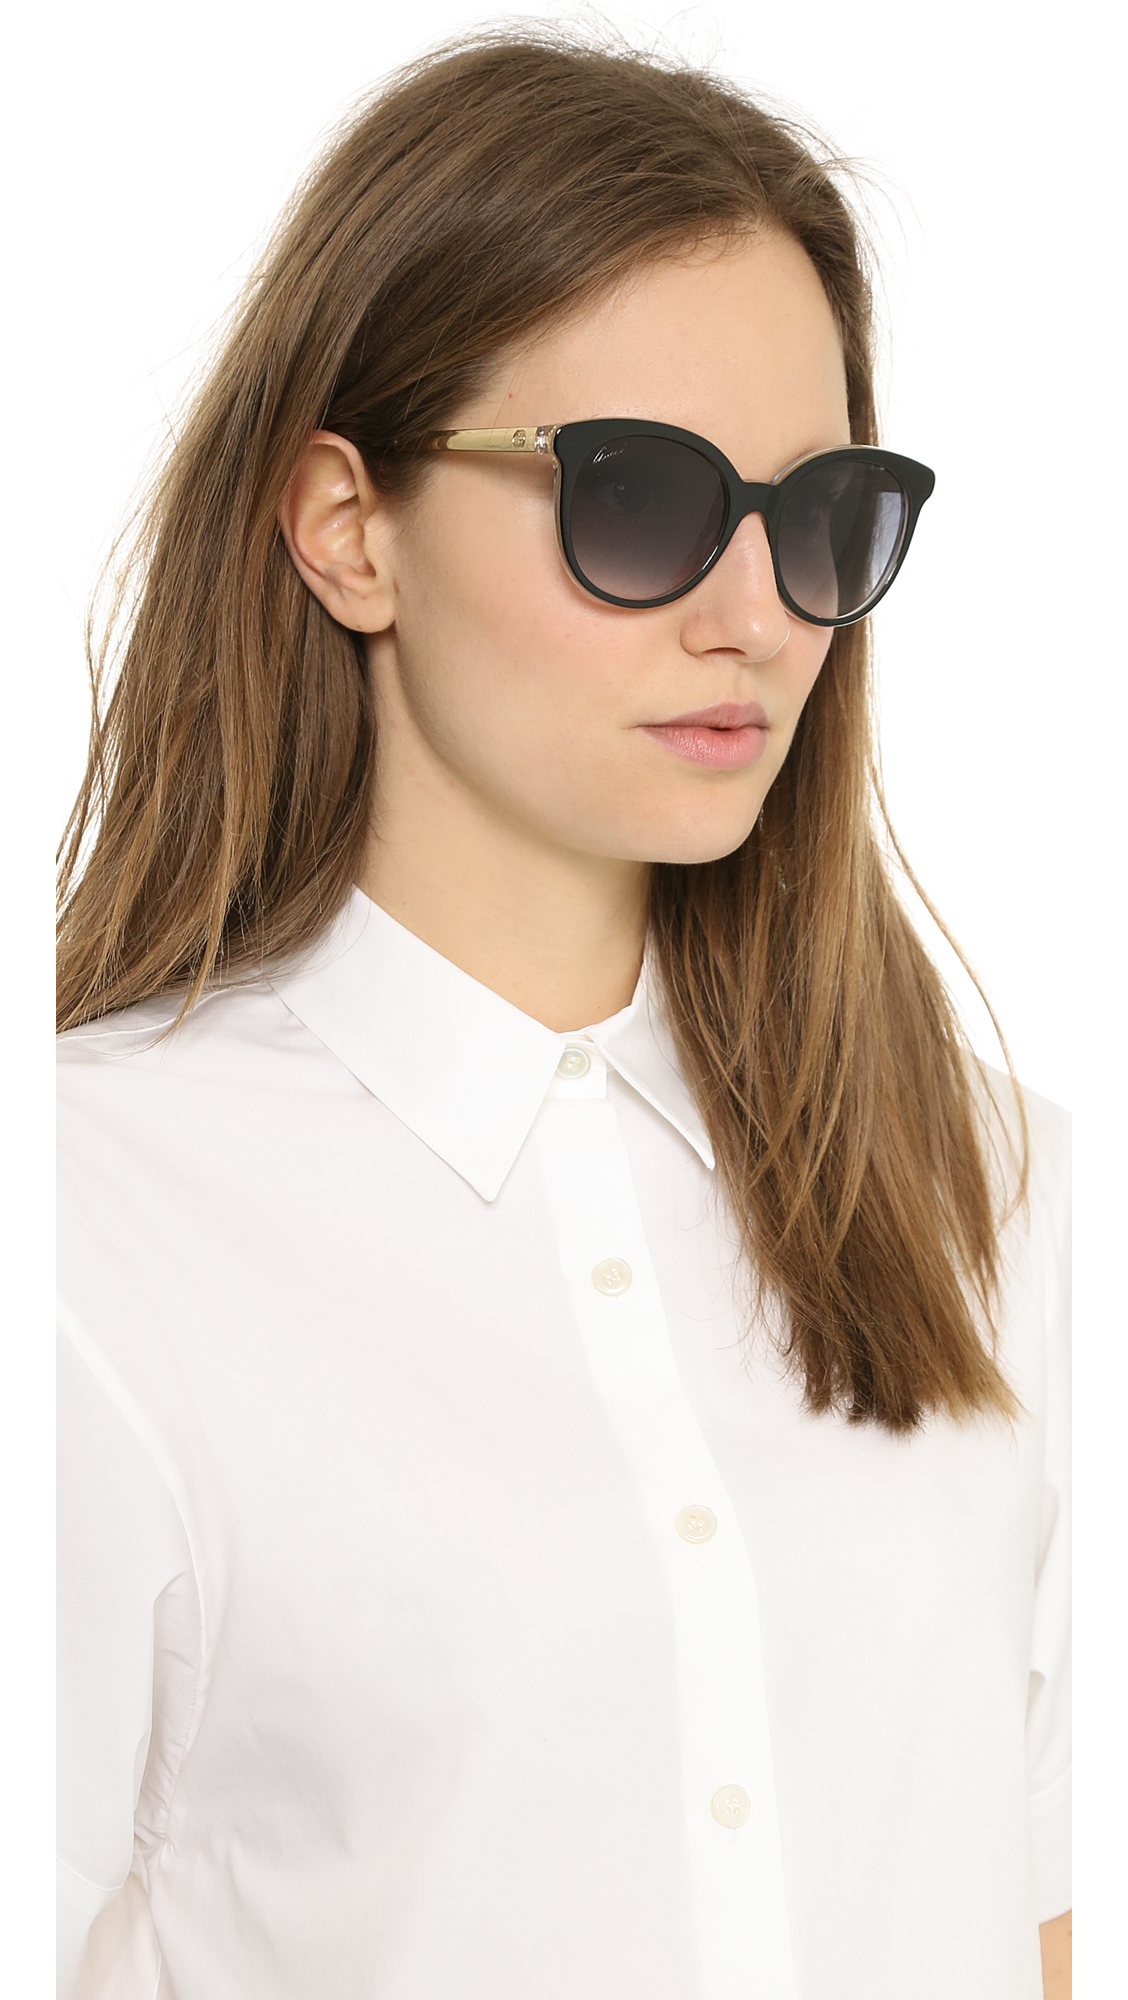 Lyst - Gucci Embossed Sunglasses - Havana/Brown Gradient in Black